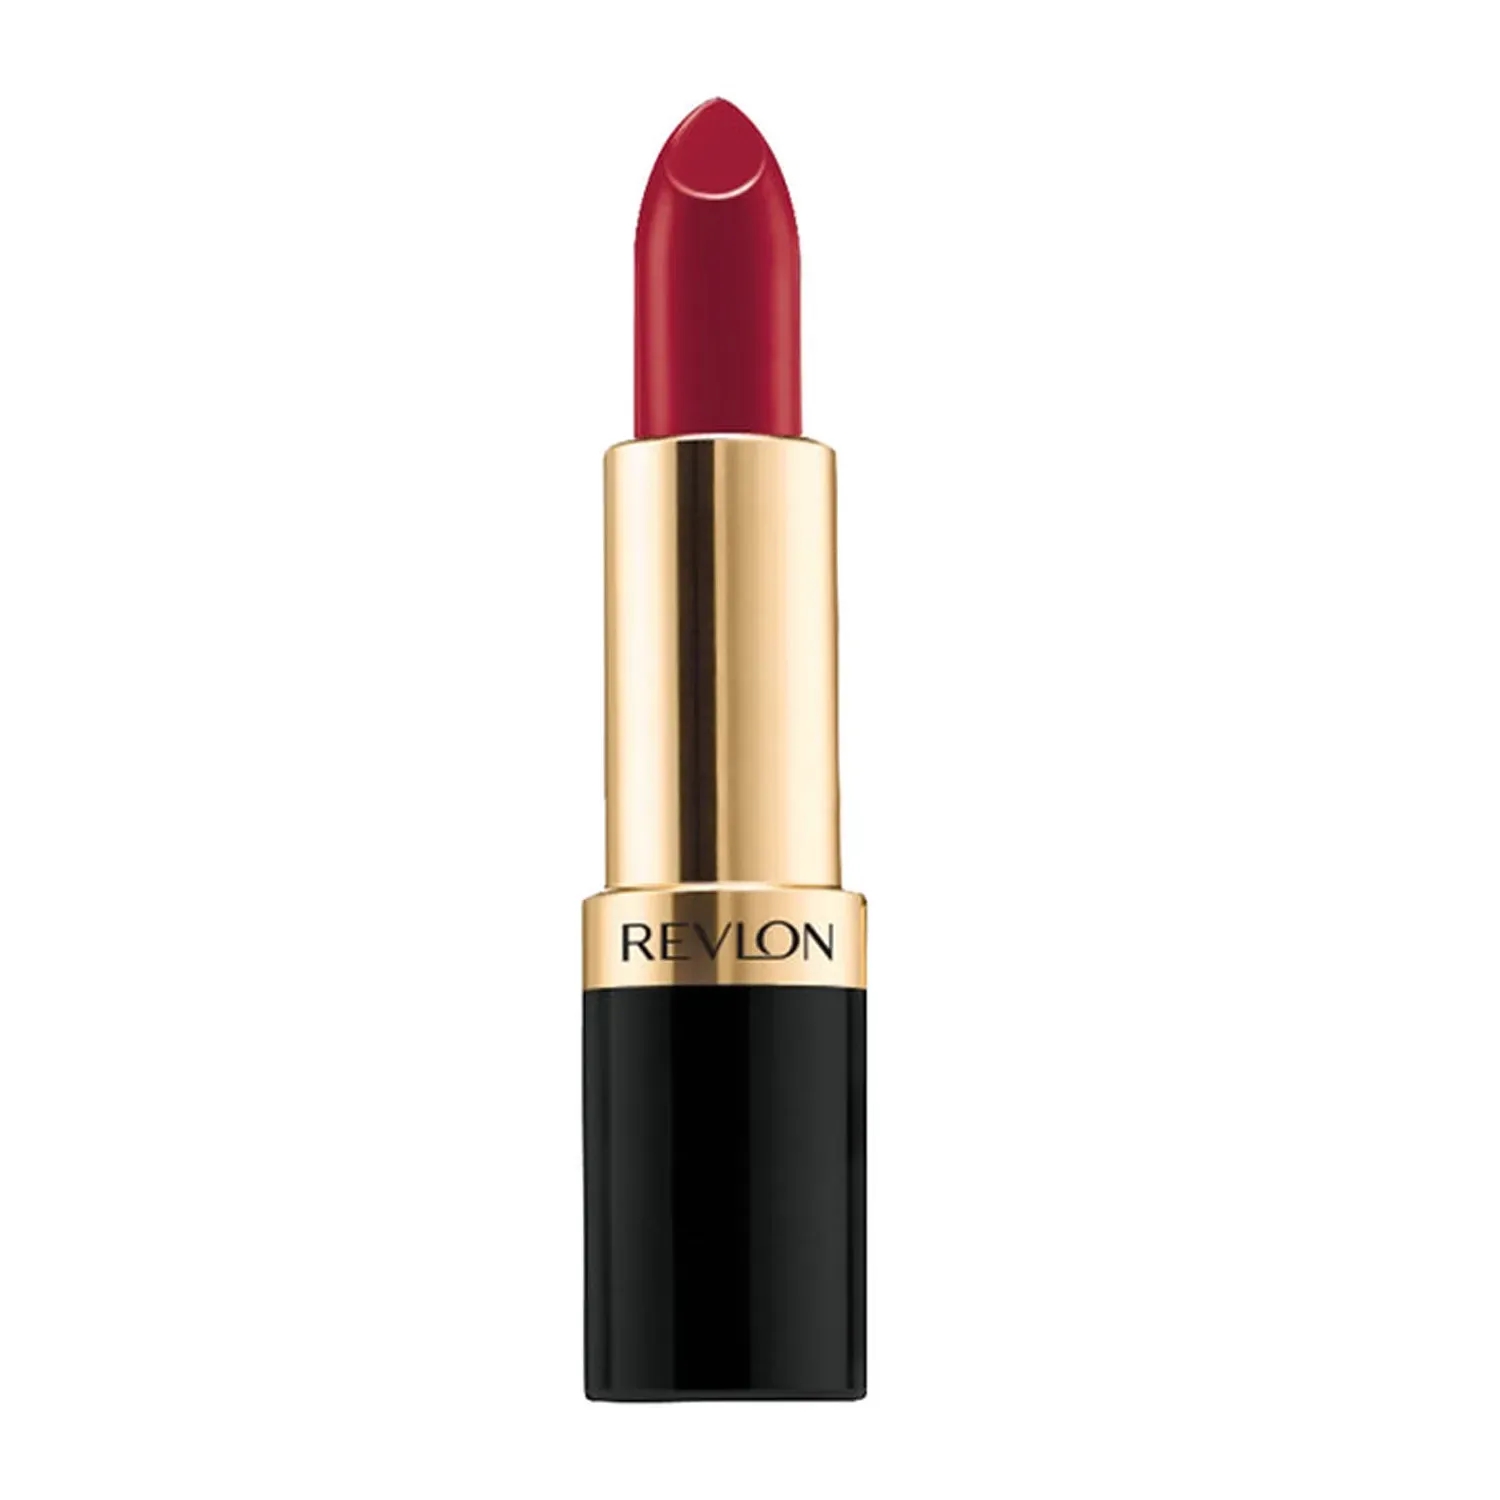 Revlon | Revlon Super Lustrous Lipstick - Red Rules The World (4.2g)